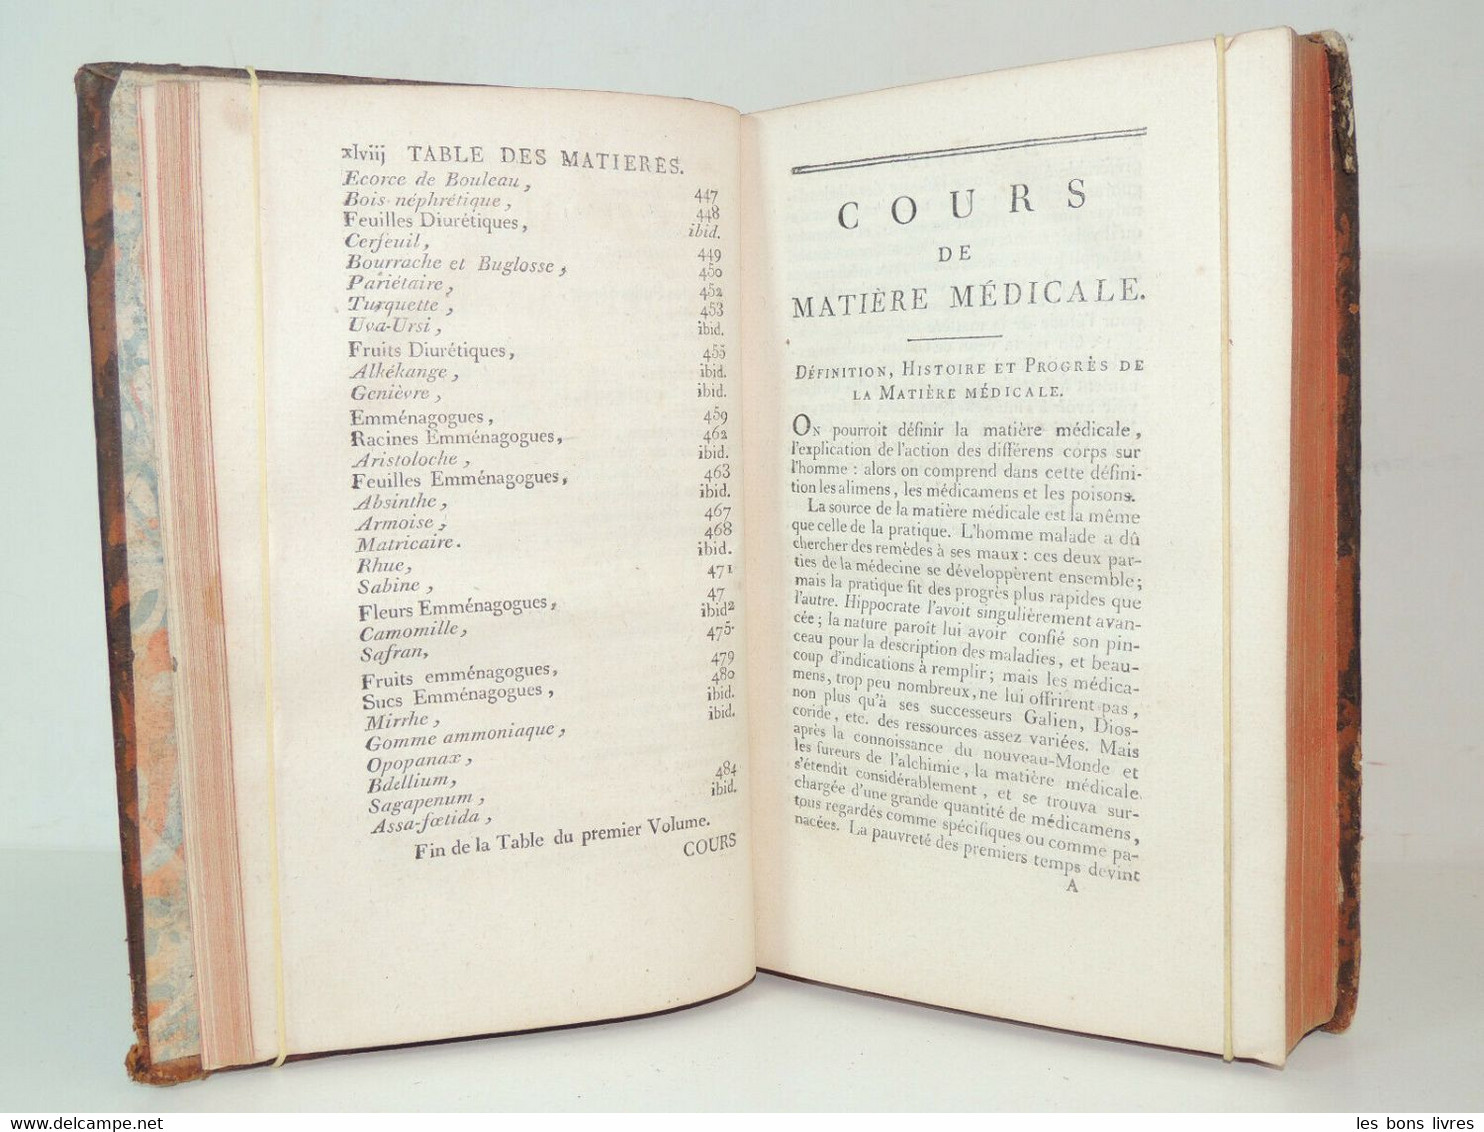 1789. Desbois De Rochefort. Matière Médicale. Magnétisme Animal - Before 18th Century